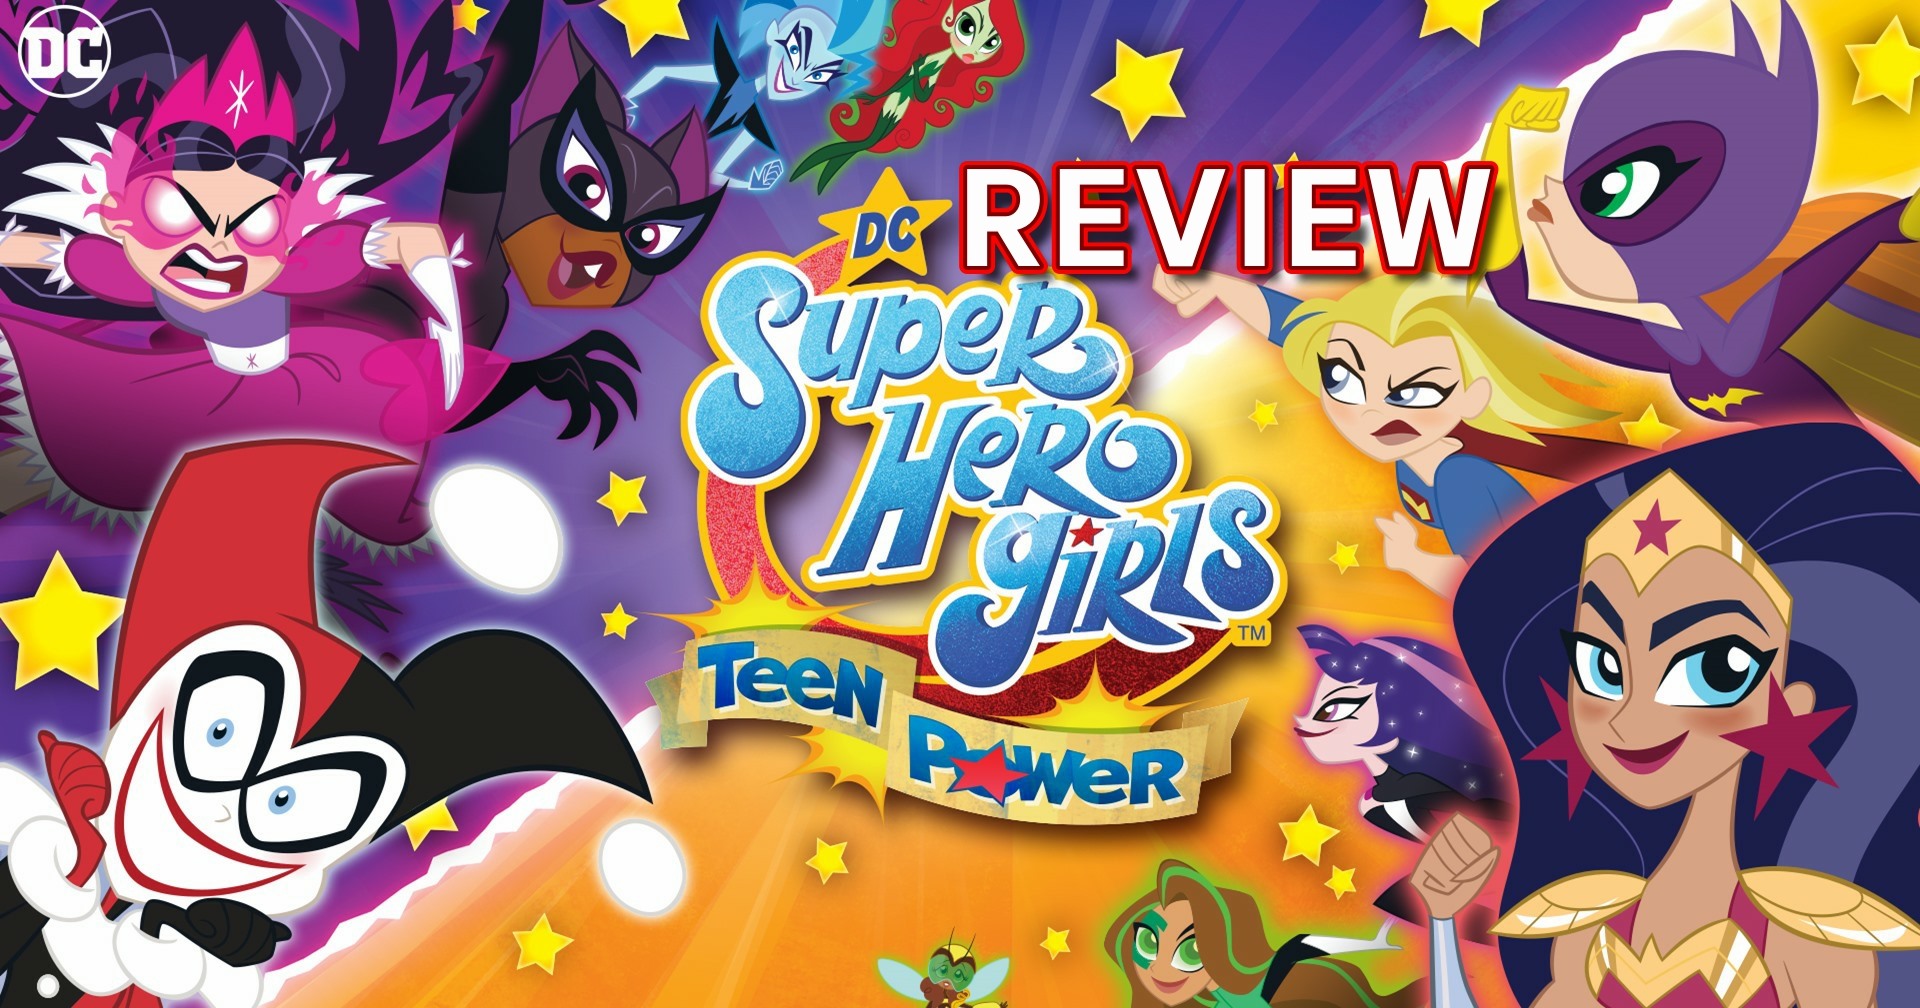 [รีวิวเกม] DC Super Hero Girls Teen Power (Switch) เกมซูเปอร์ฮีโรฉบับน่ารัก